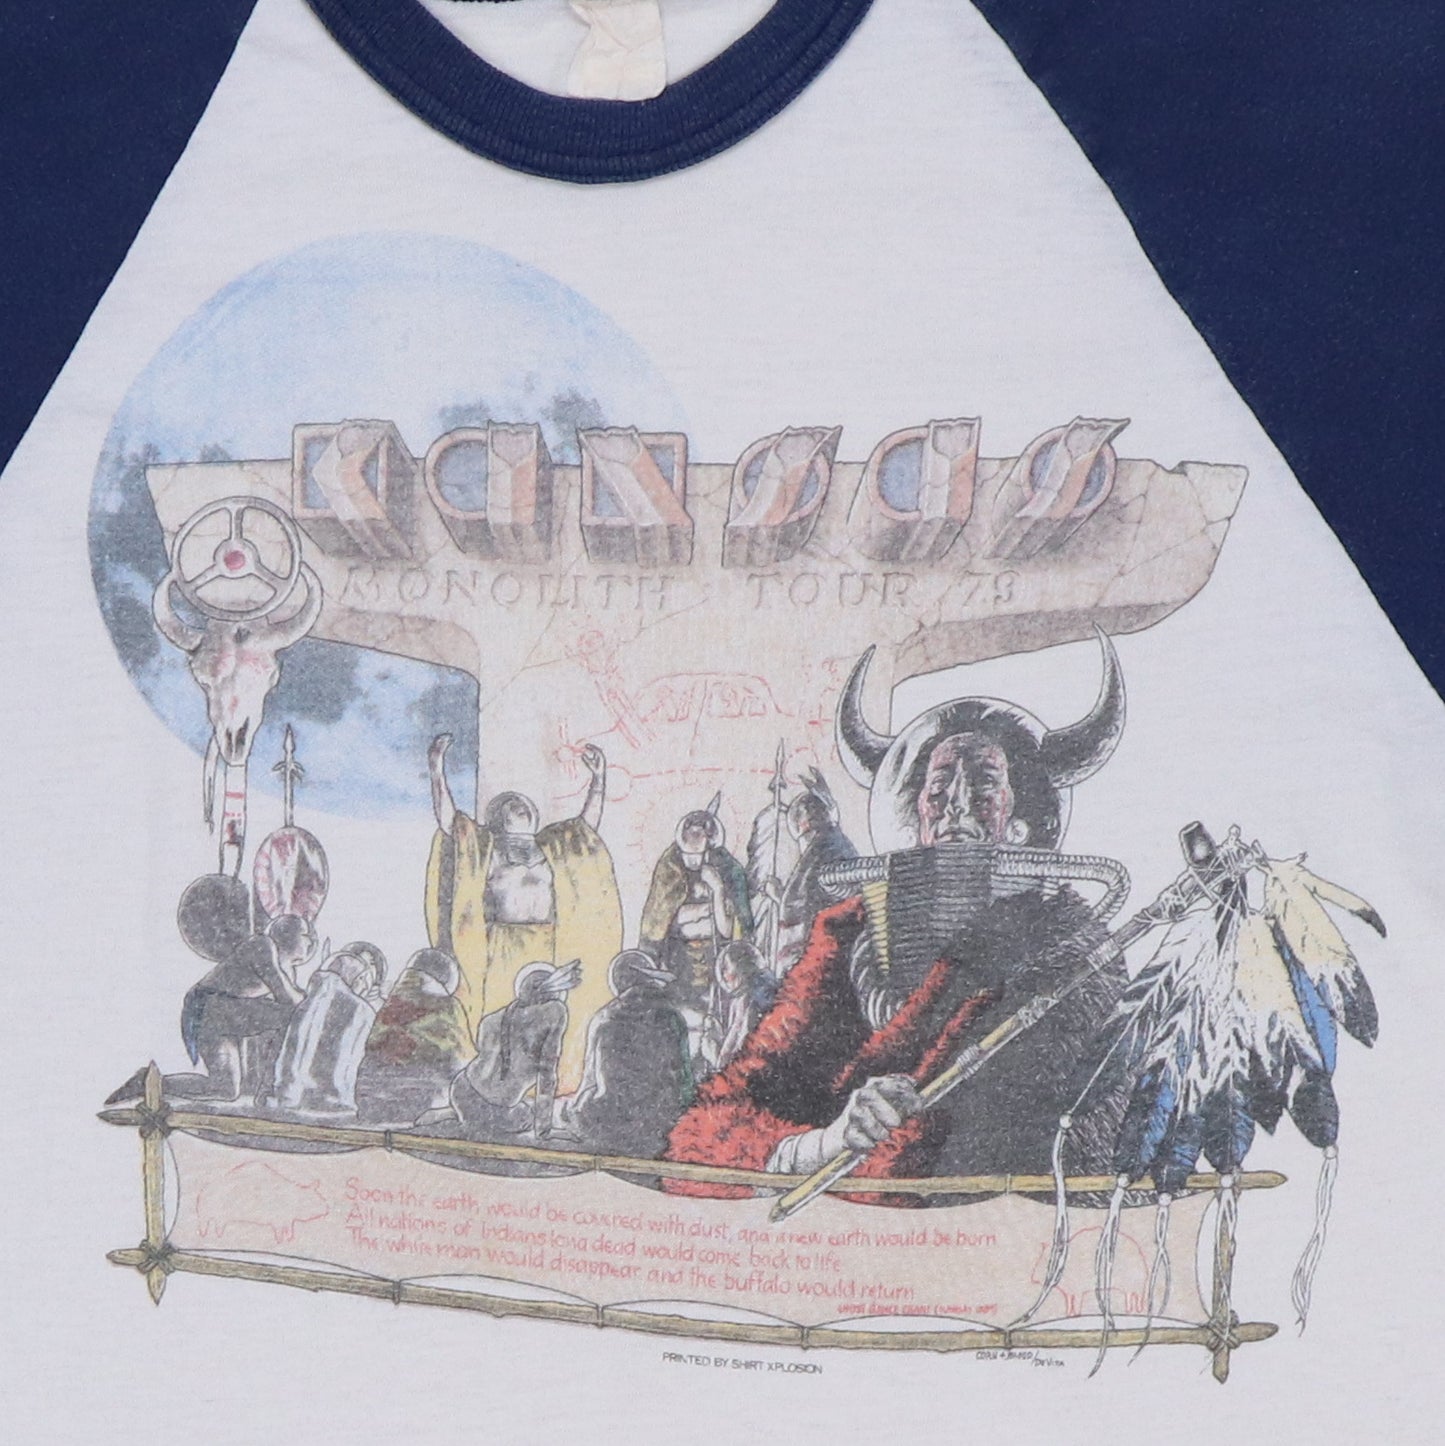 1979 Kansas Monolith Tour Jersey Shirt